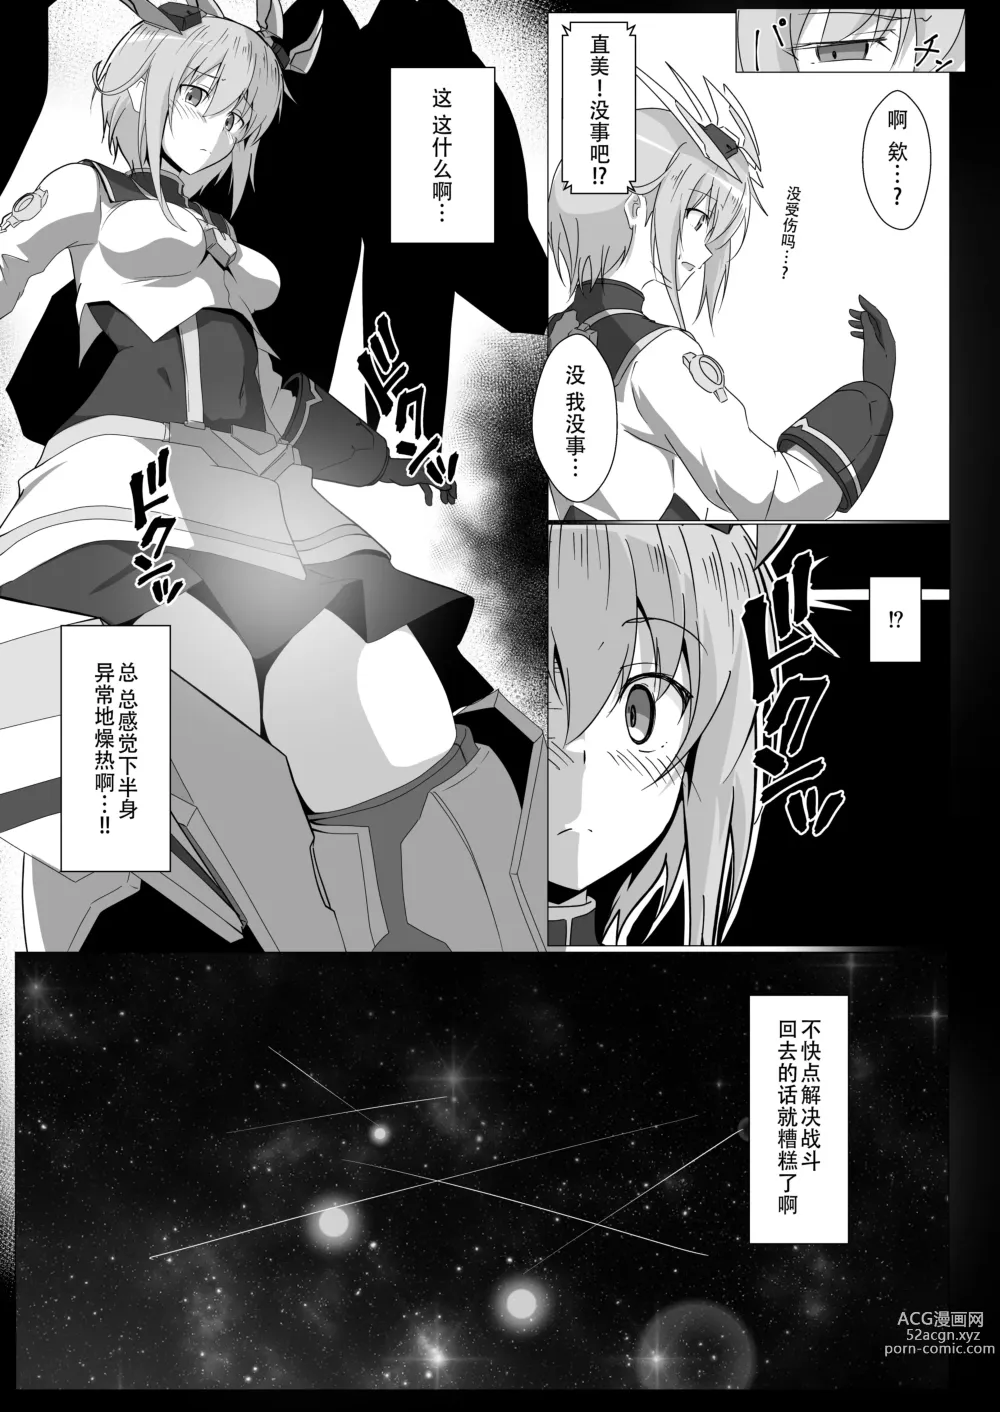 Page 6 of doujinshi 安里桑・・・好像有什么长出来了・・・